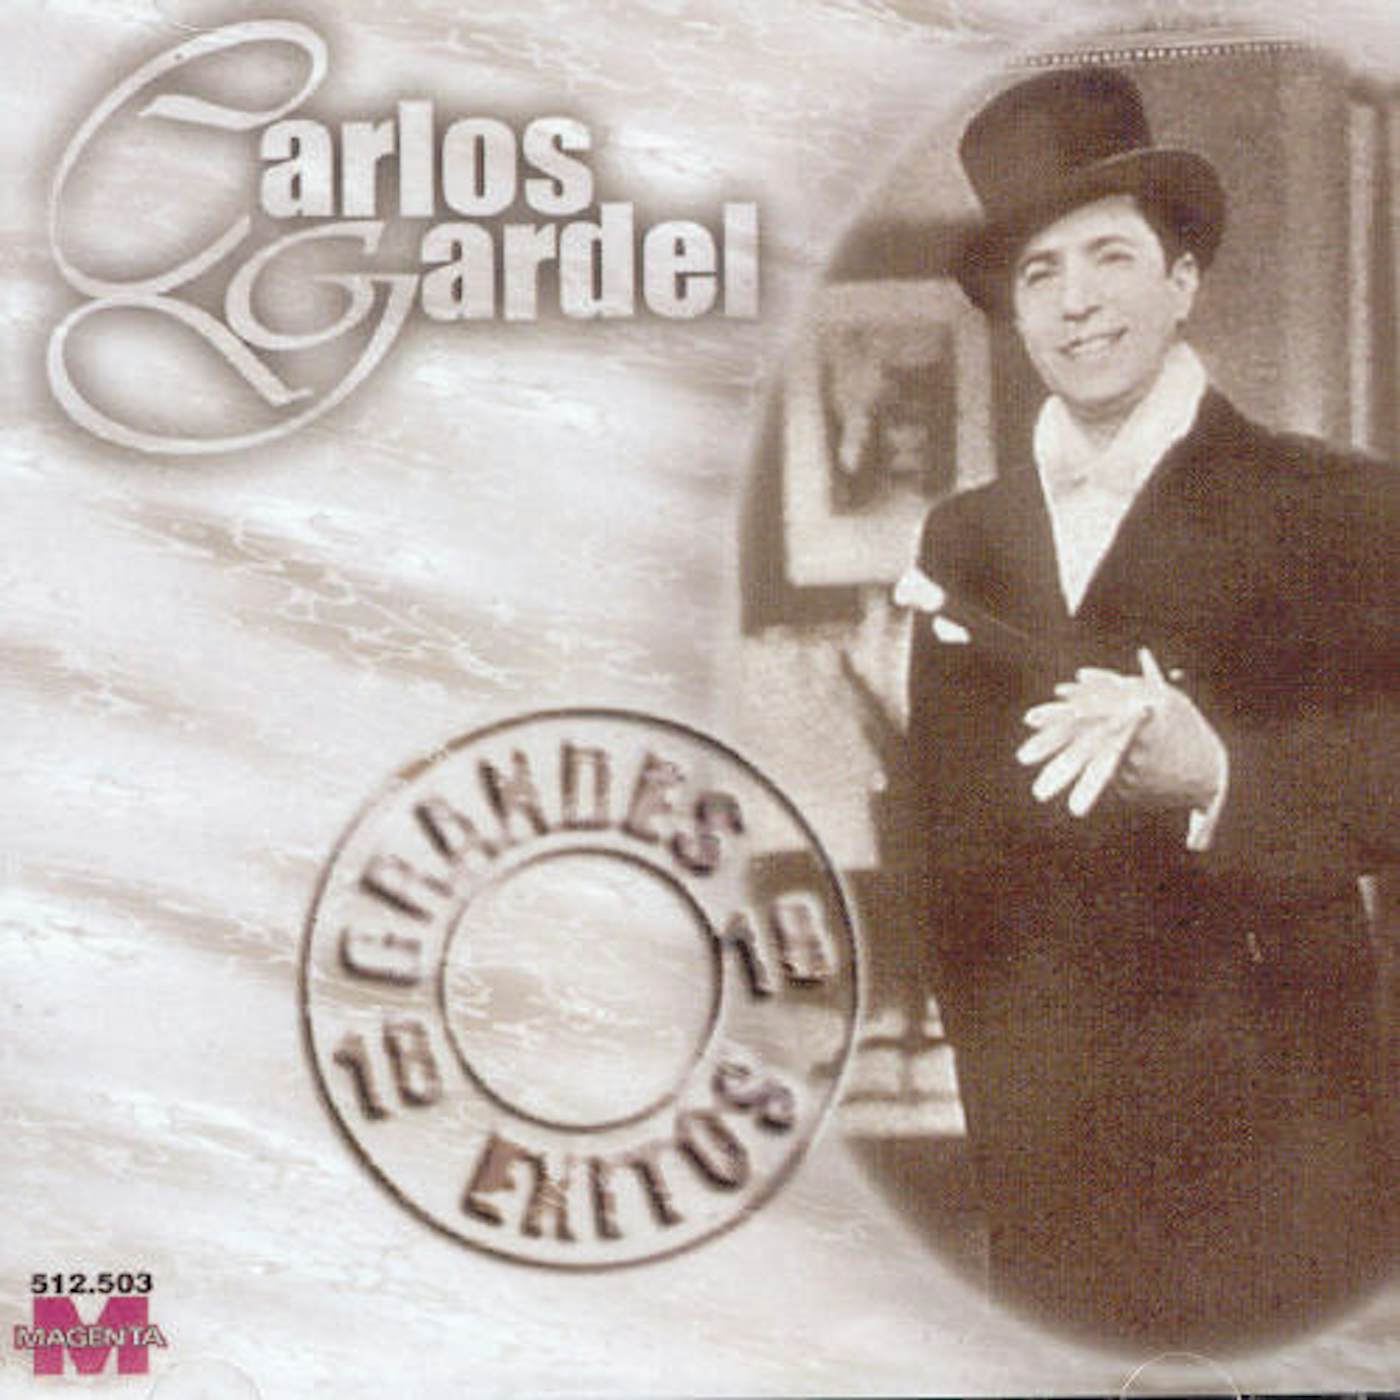 Carlos Gardel 18 GRANDES EXITOS CD